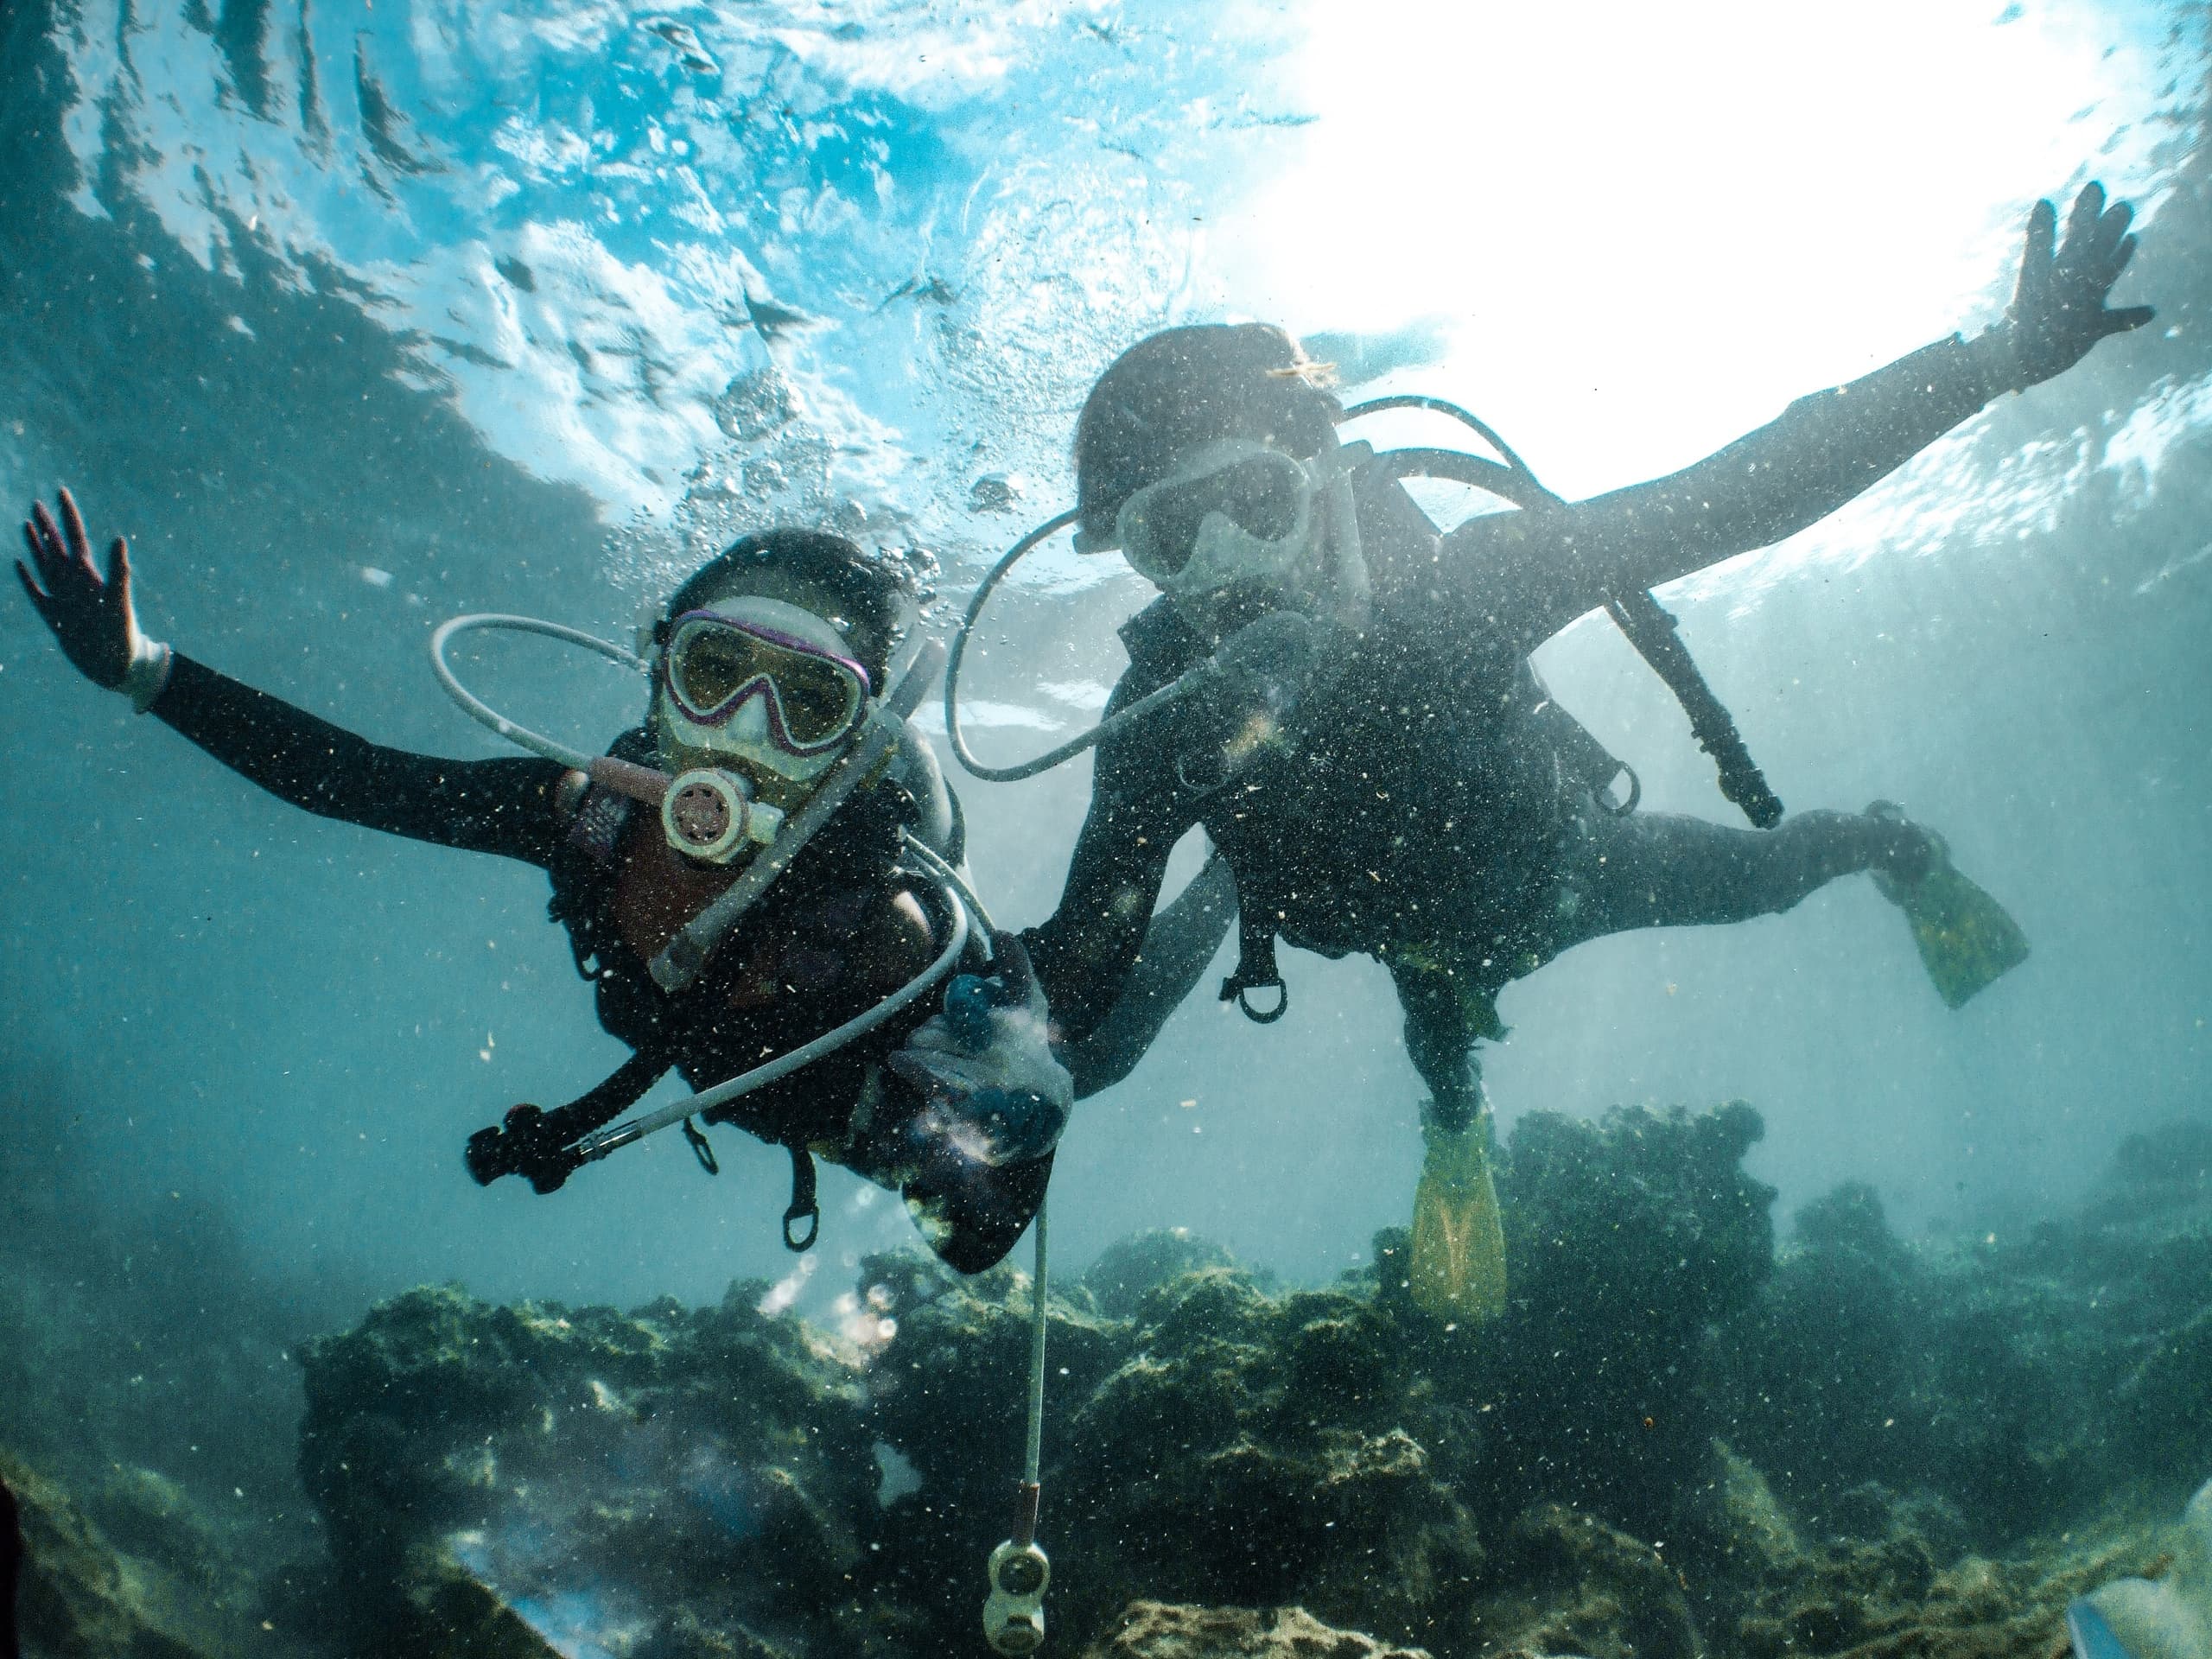 underwater-shot-of-two-people-diving-2022-03-07-22-43-05-utc.jpg